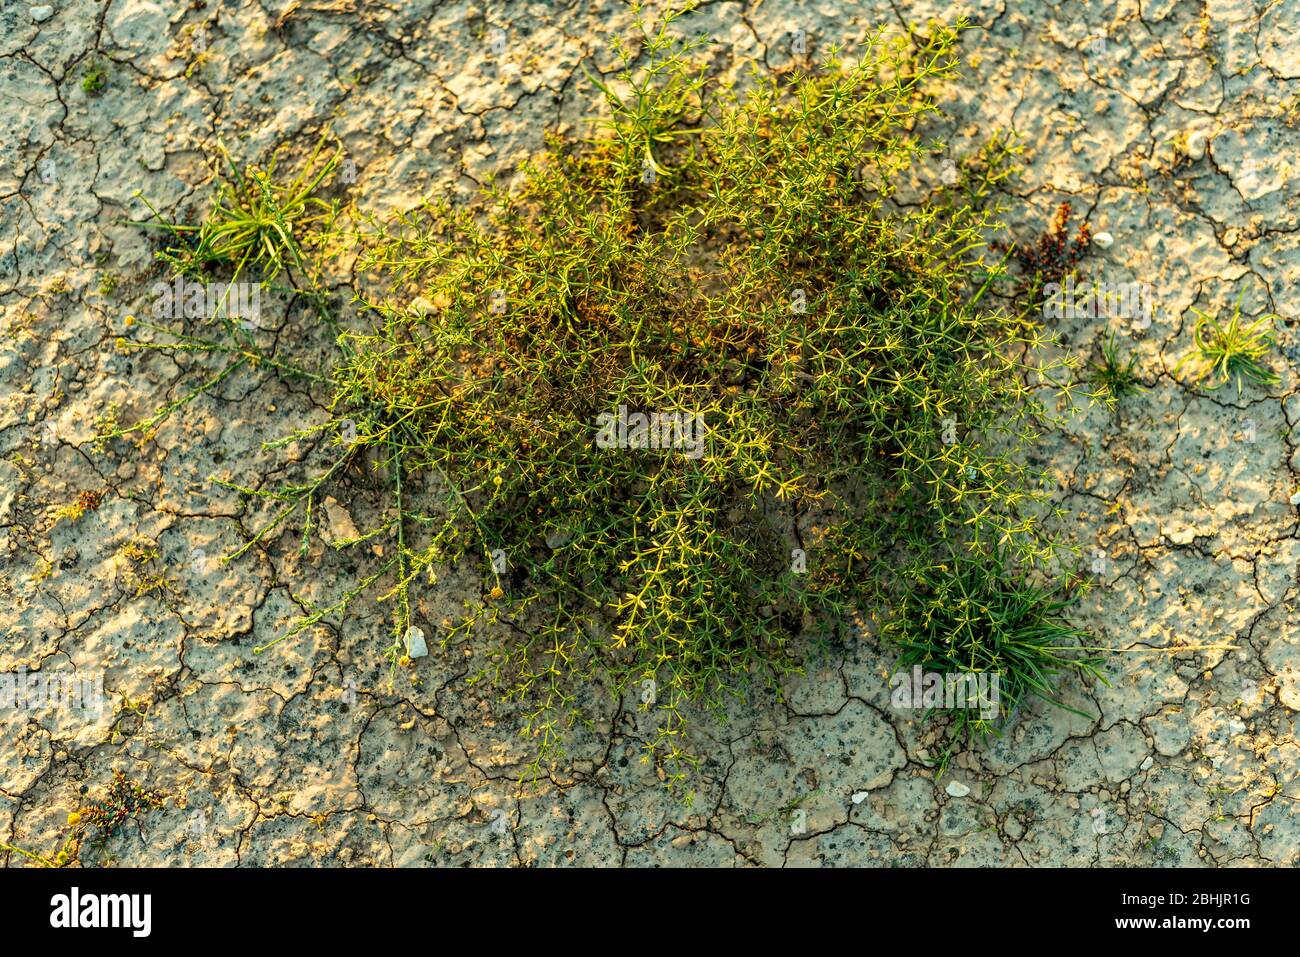 Eine Outdoor-Landschaft Nahaufnahme einer wilden grünen Strauchpflanze wächst an einem desolaten trockenen Wüstensand an einem sonnigen Sommertag erschossen Stockfoto